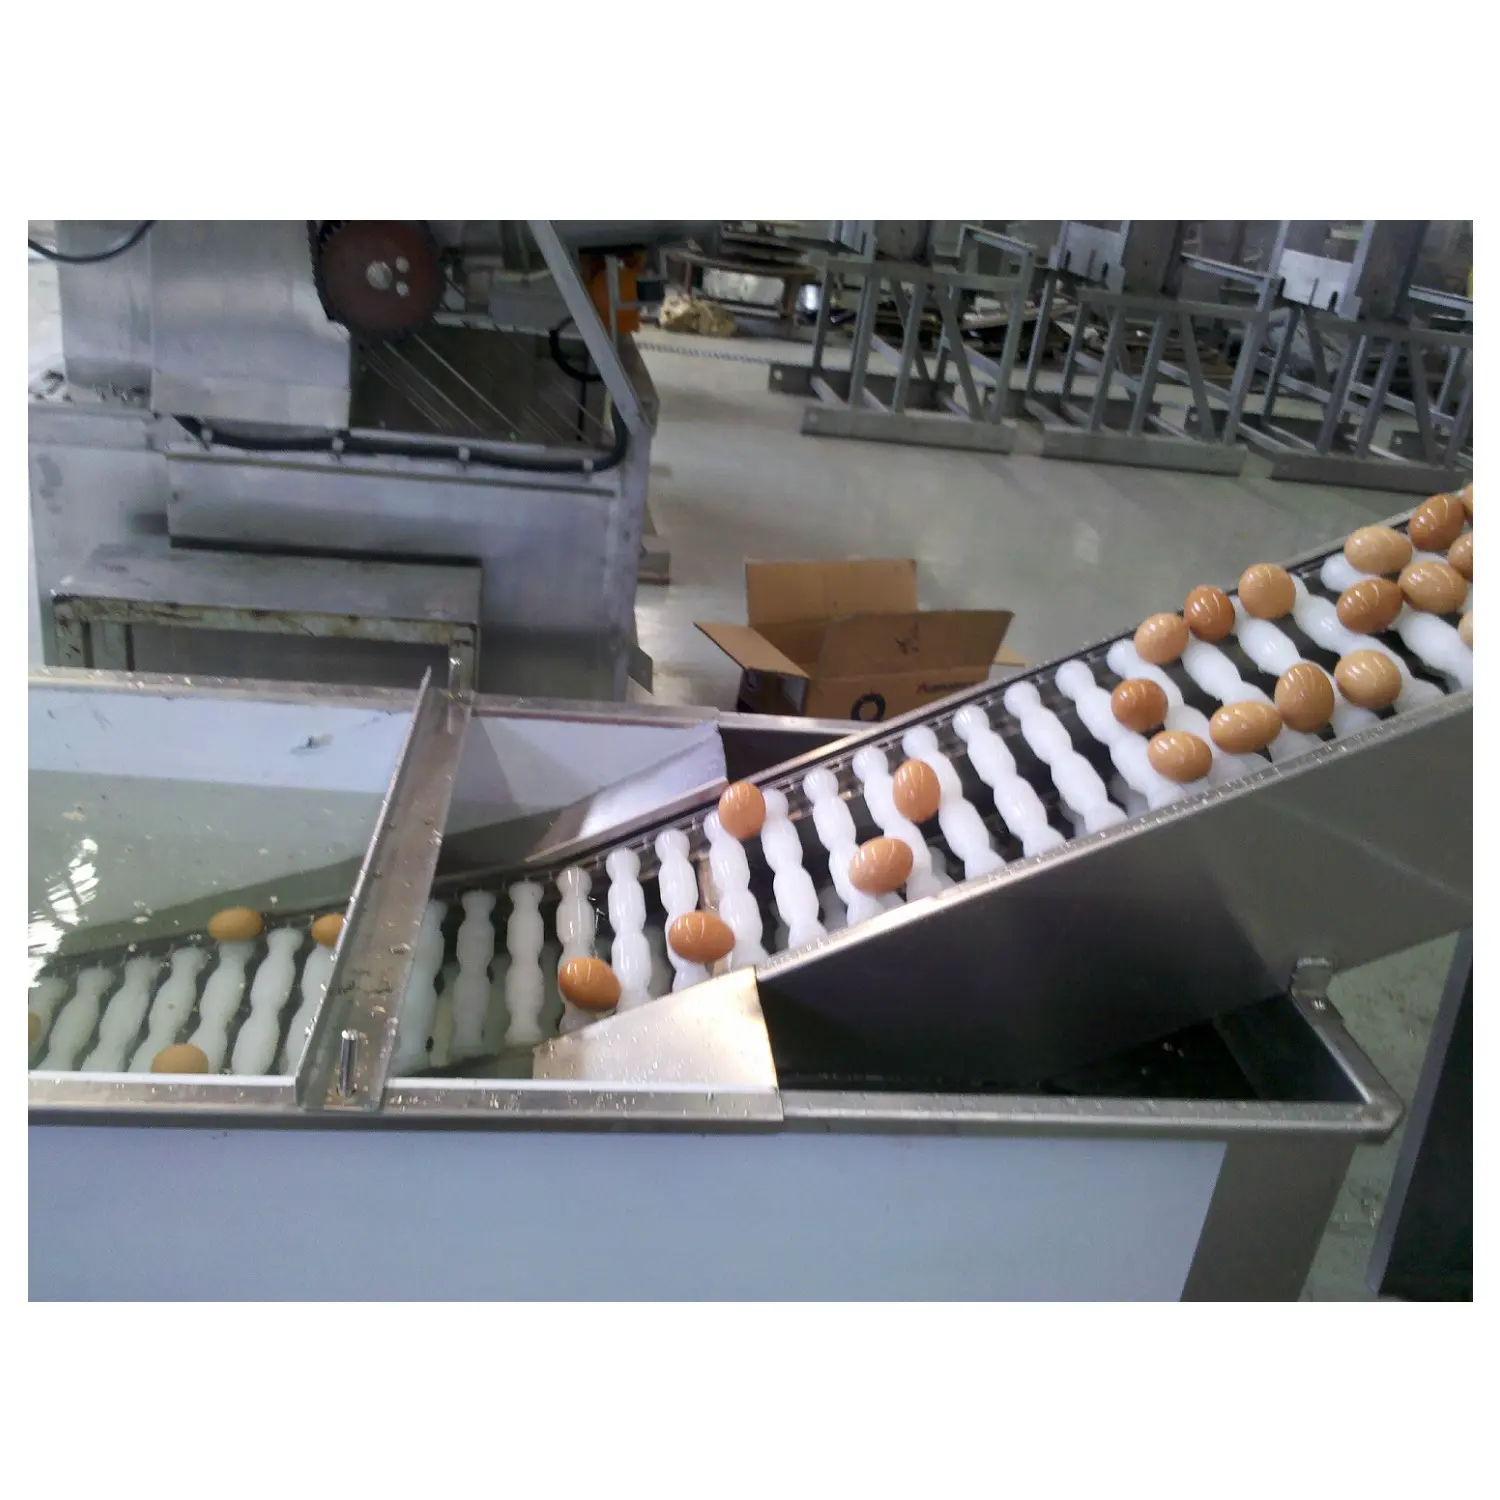 Prezzo basso tuorlo d'uovo macchina separatore bianco uovo breaker uovo liquido linea di produzione